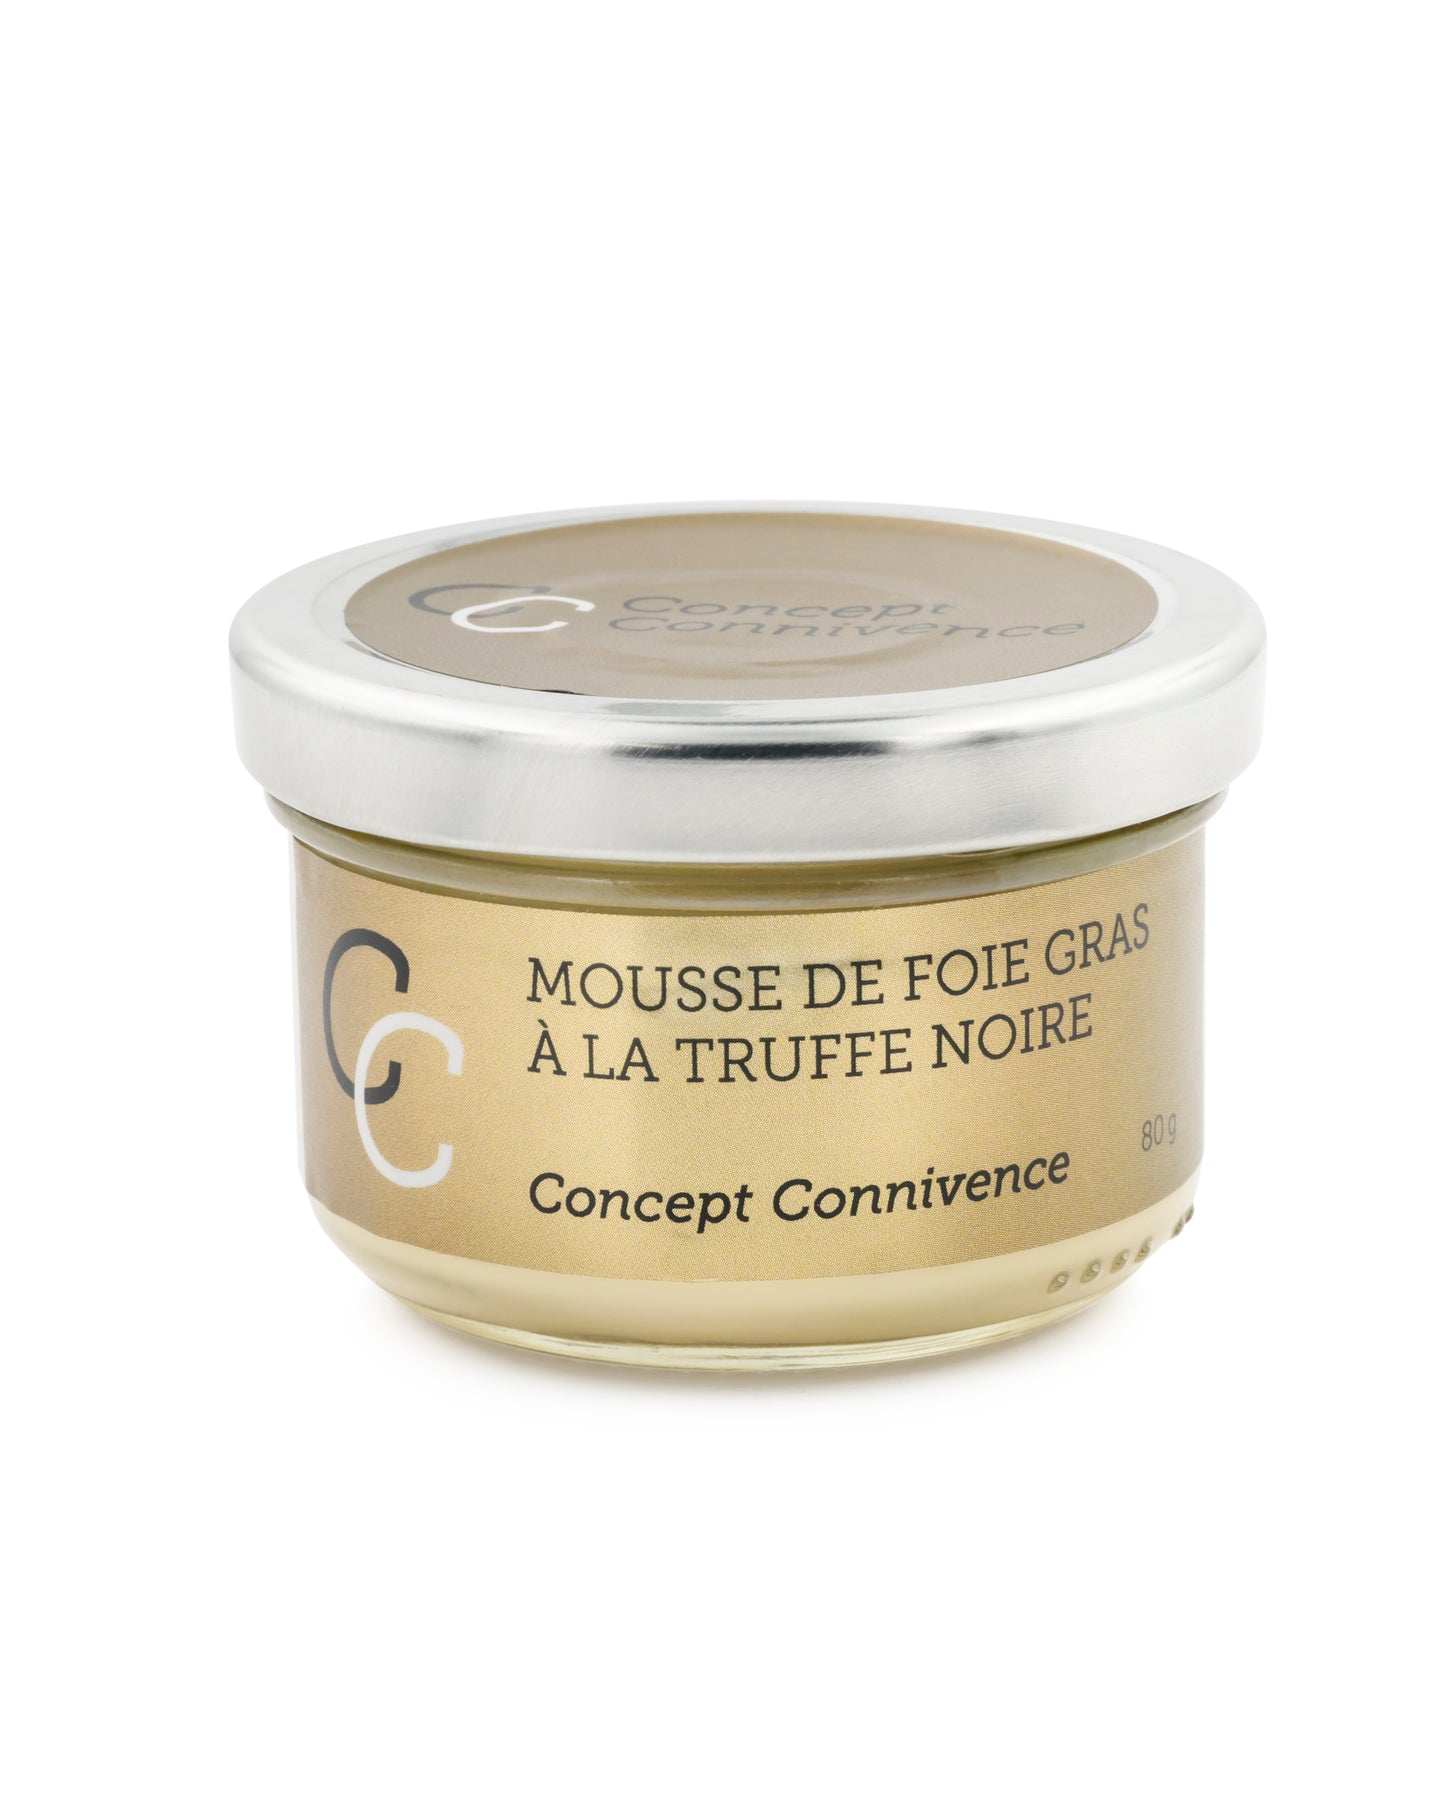 Mousse de foie gras à la truffe noire